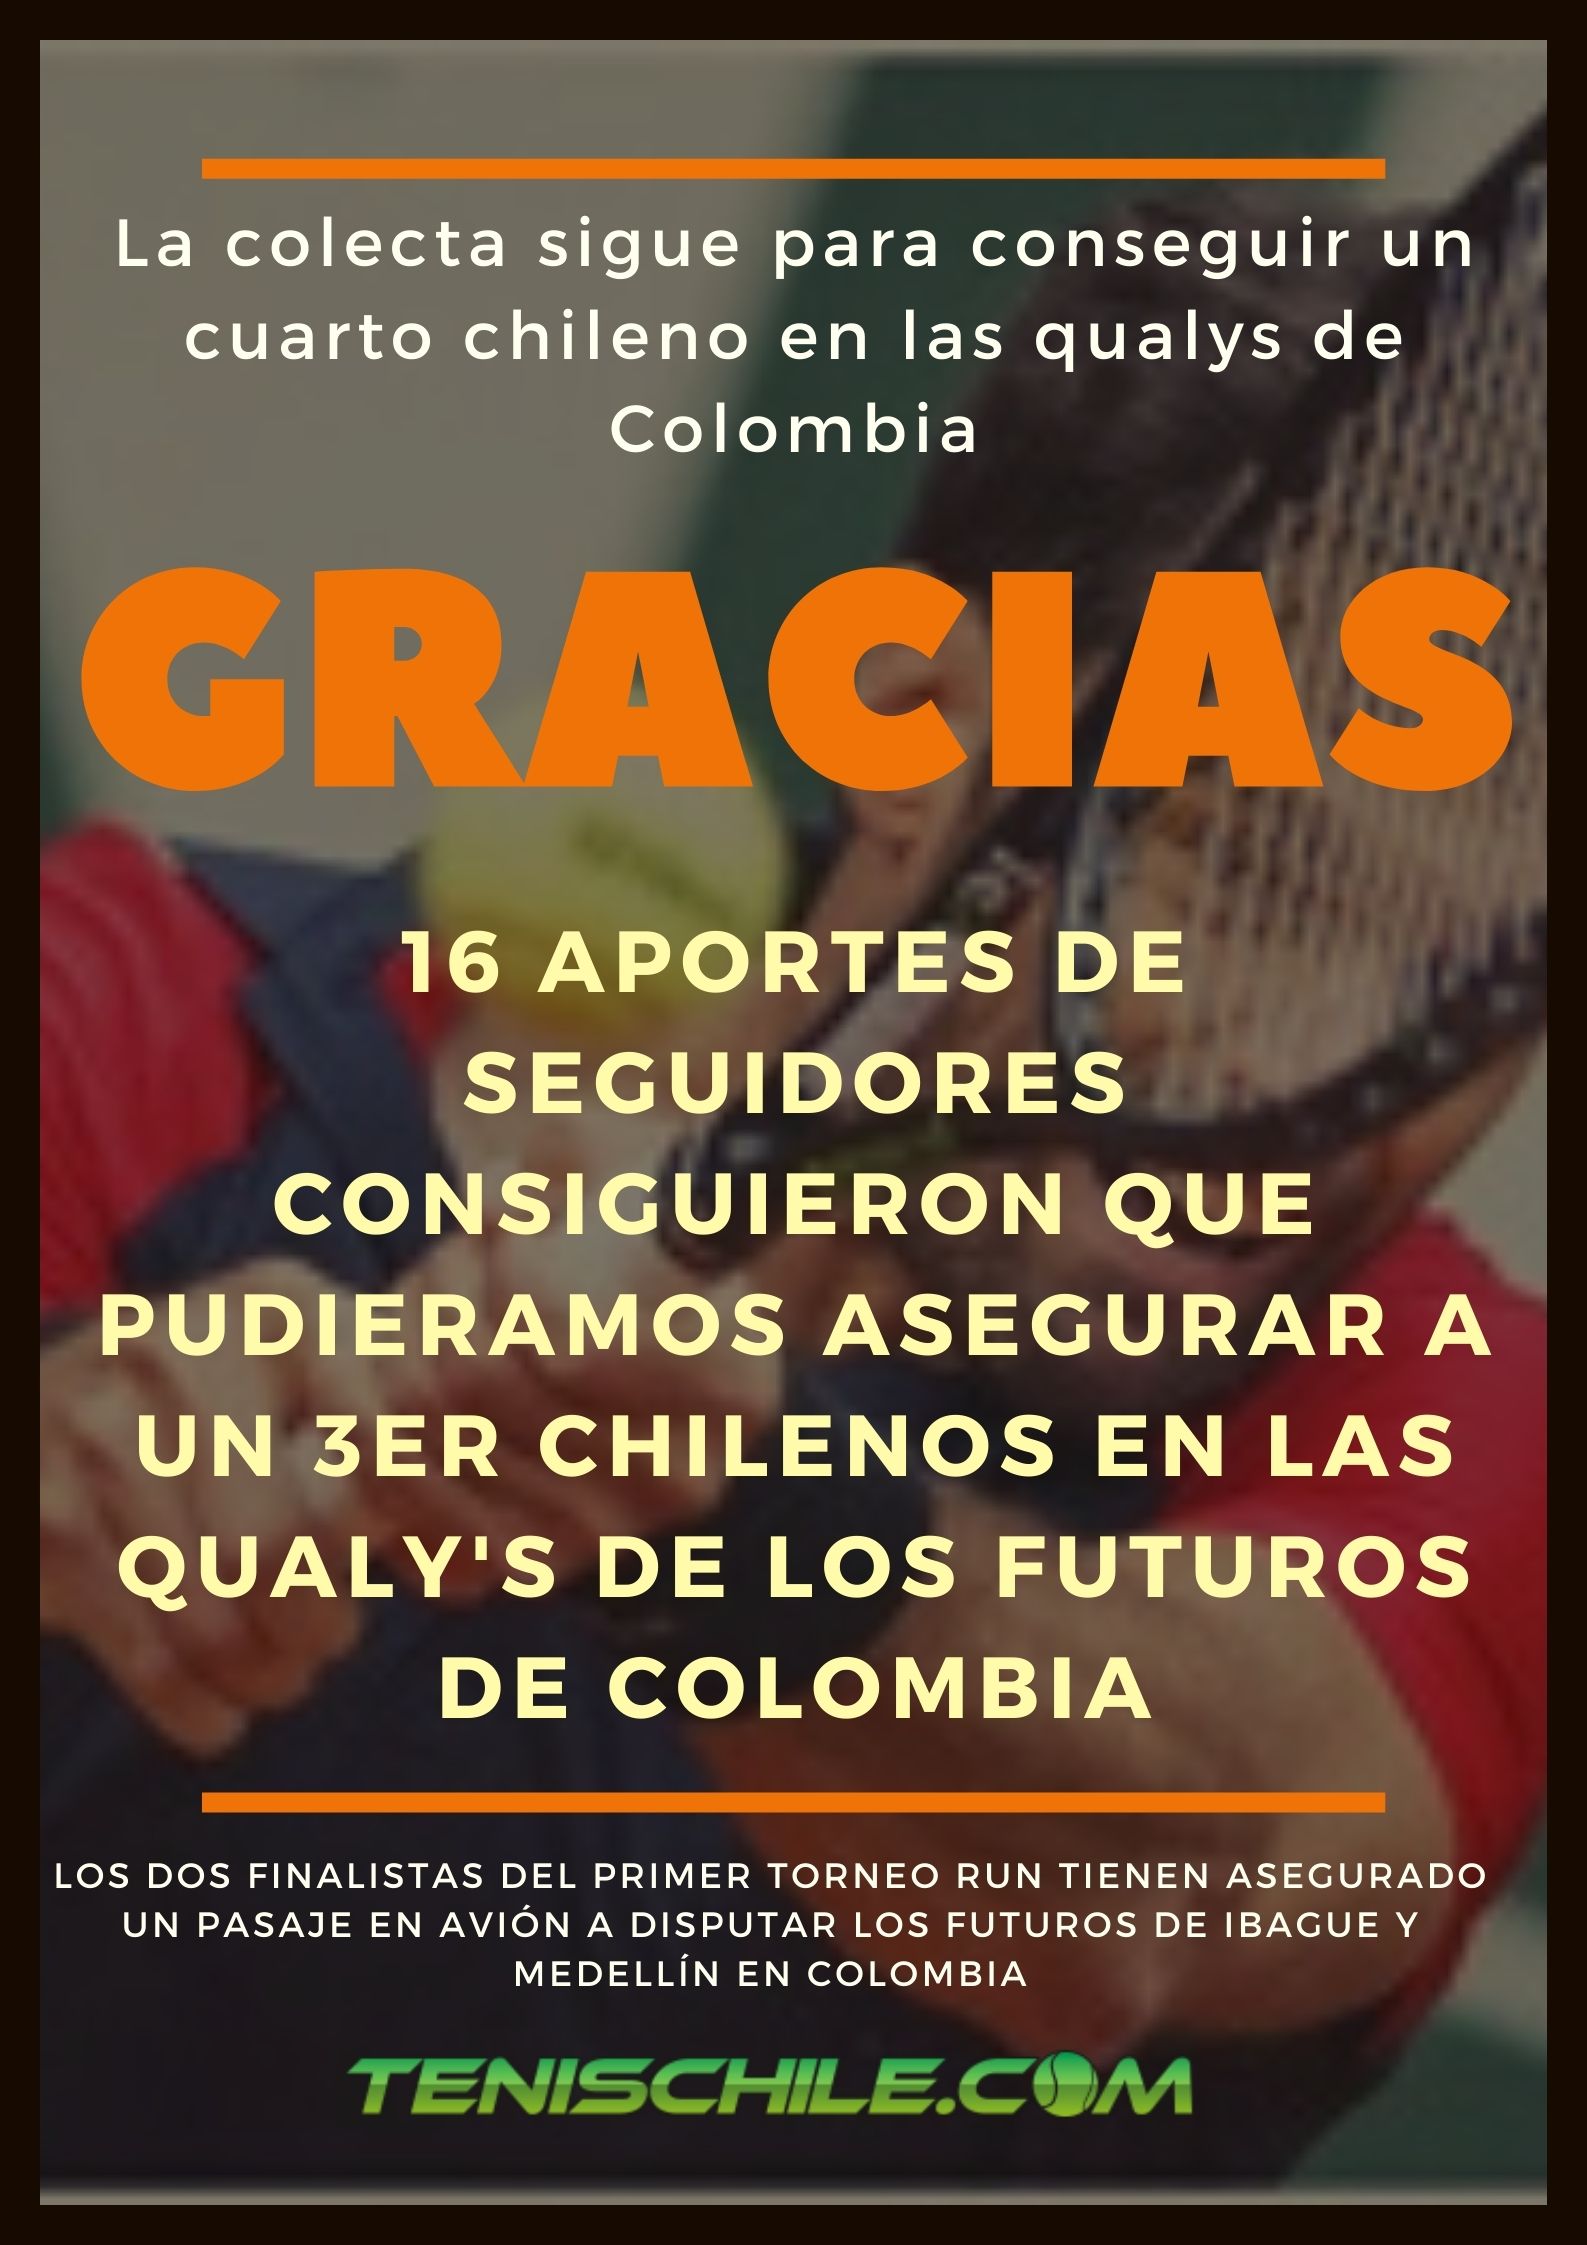 Gracias!!! Un 3er chileno podrá jugar la qualy de los futuros en Colombia